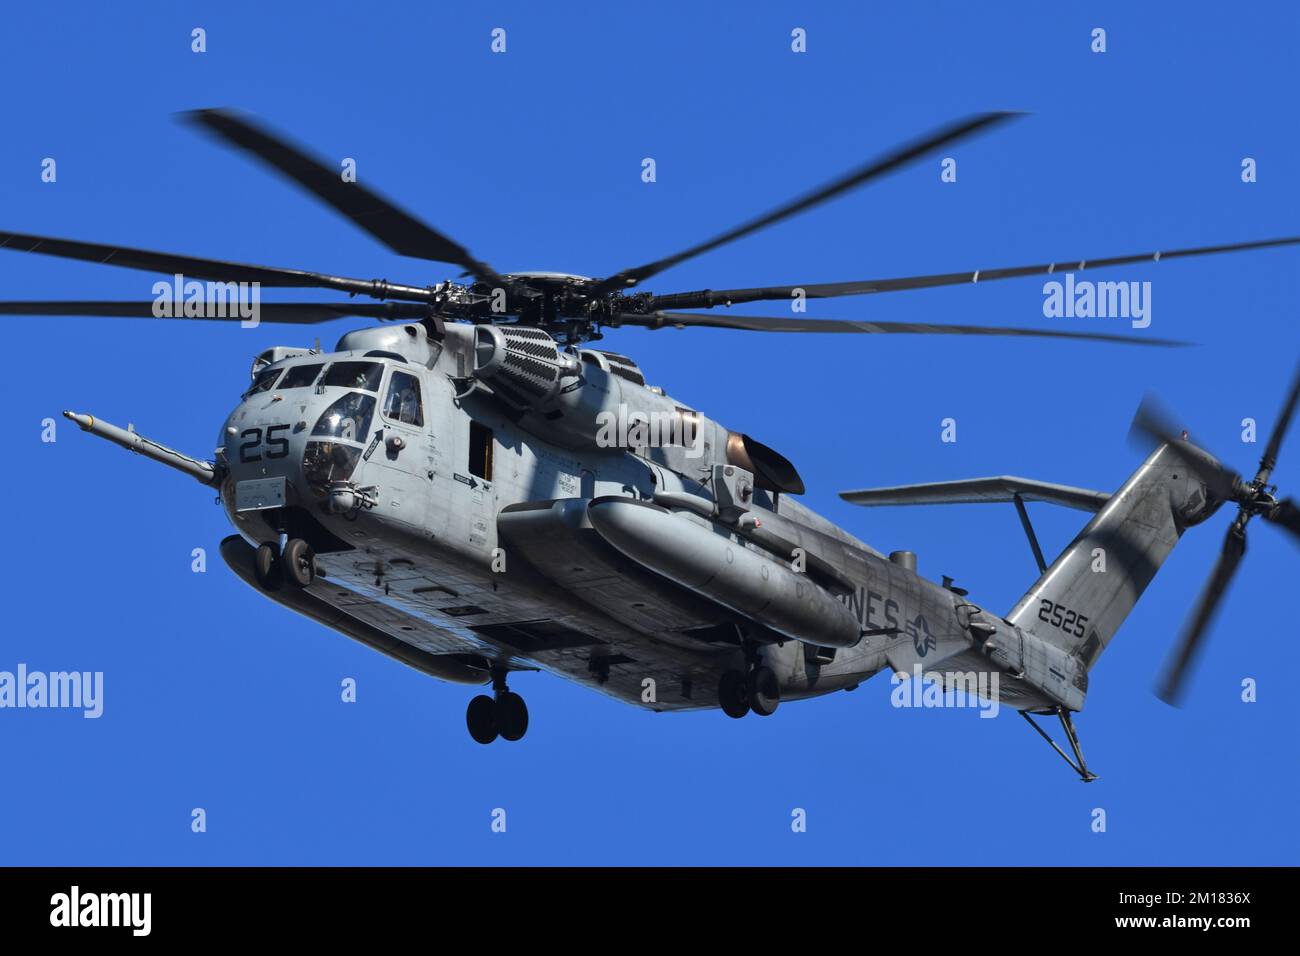 Prefectura de Kanagawa, Japón - 18 de diciembre de 2021: US Marine Corps Sikorsky CH-53E Super Stallion helicóptero de carga pesada desde HMH-466 Wolfpack. Foto de stock